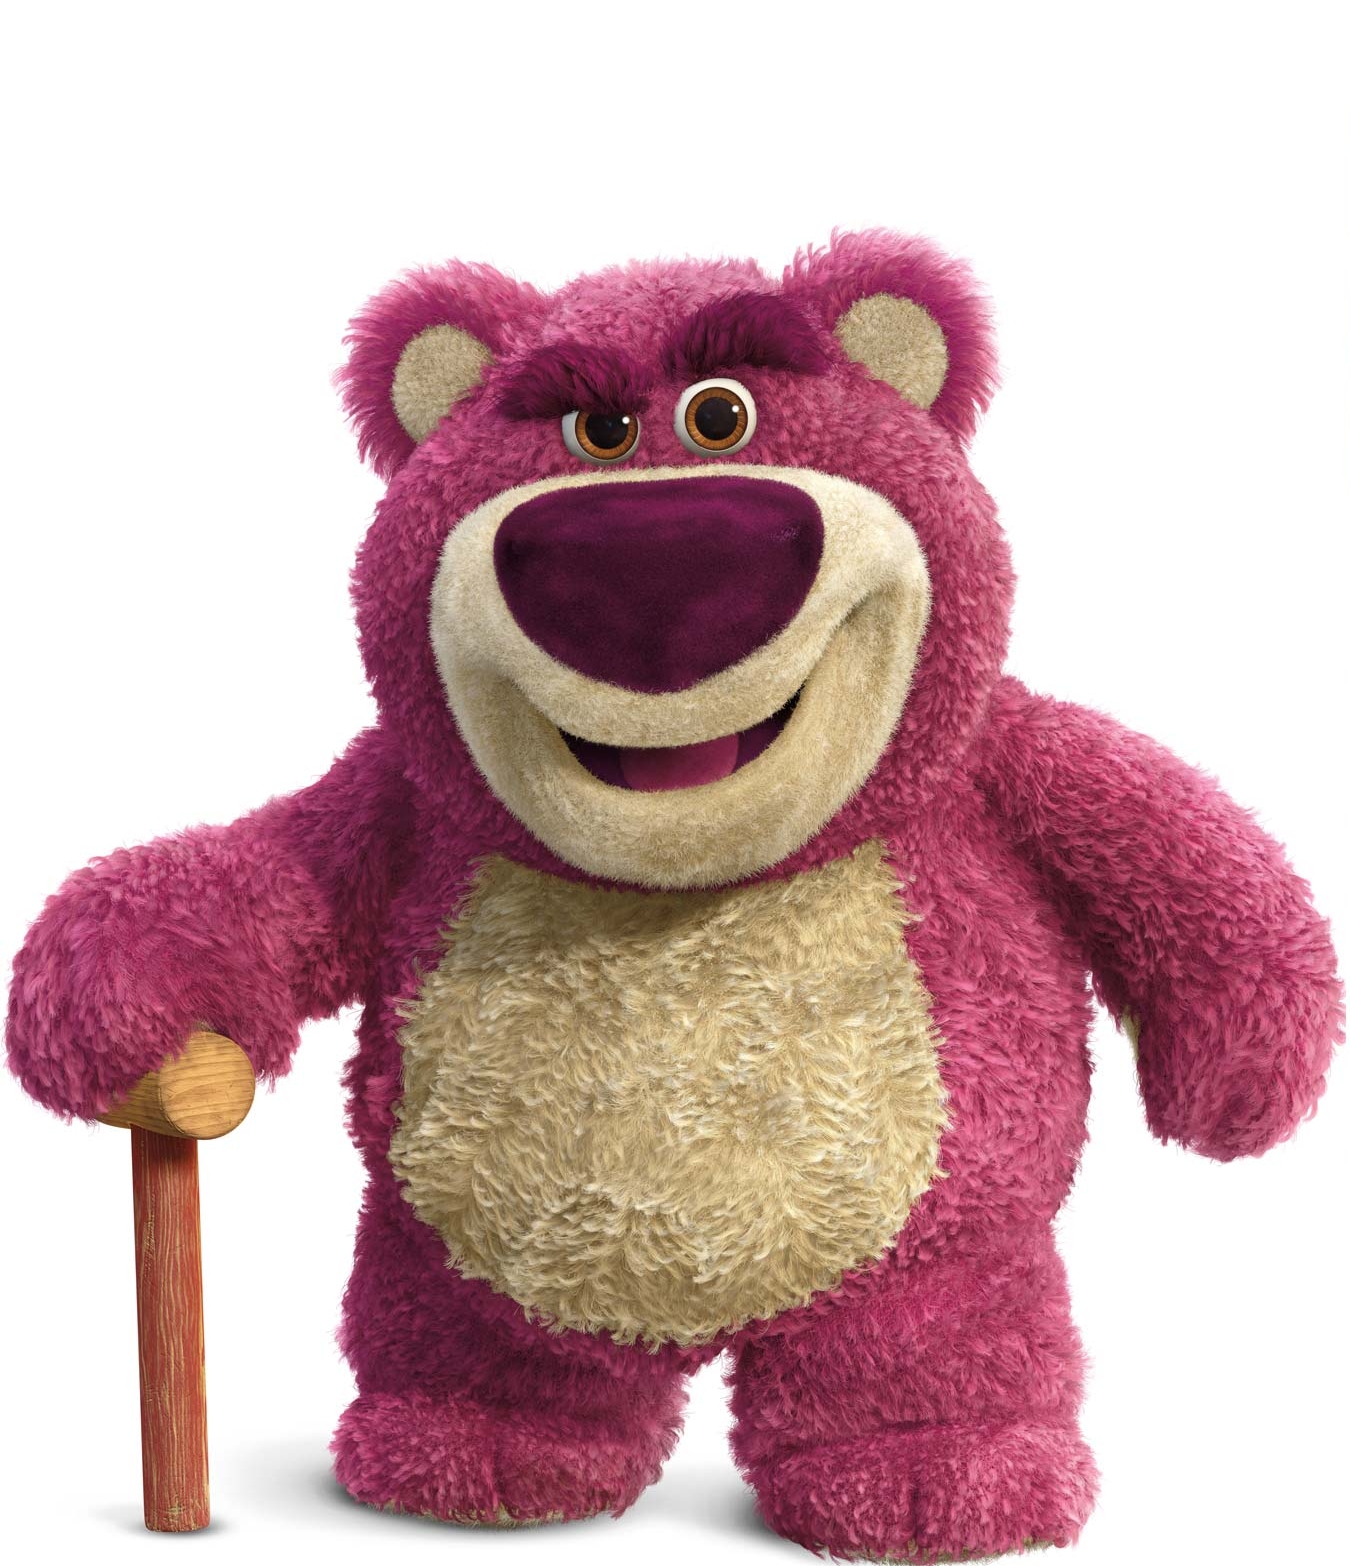 尼德巴帝曾为《反斗奇兵3》反派玩具熊配音。